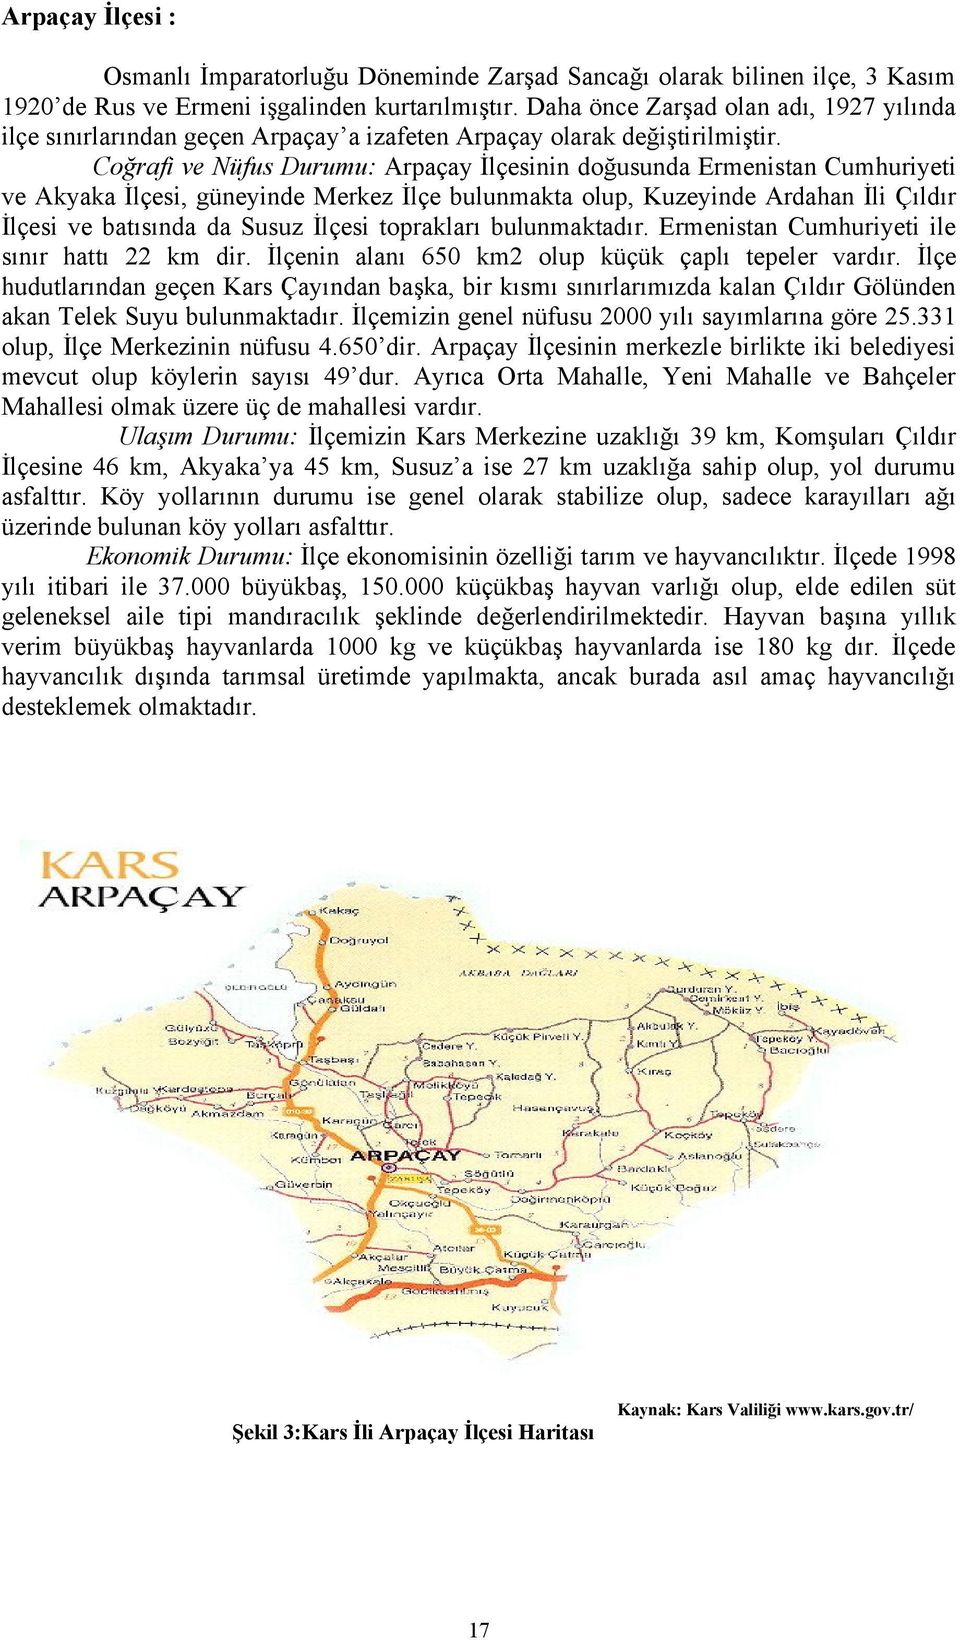 Coğrafi ve Nüfus Durumu: Arpaçay İlçesinin doğusunda Ermenistan Cumhuriyeti ve Akyaka İlçesi, güneyinde Merkez İlçe bulunmakta olup, Kuzeyinde Ardahan İli Çıldır İlçesi ve batısında da Susuz İlçesi